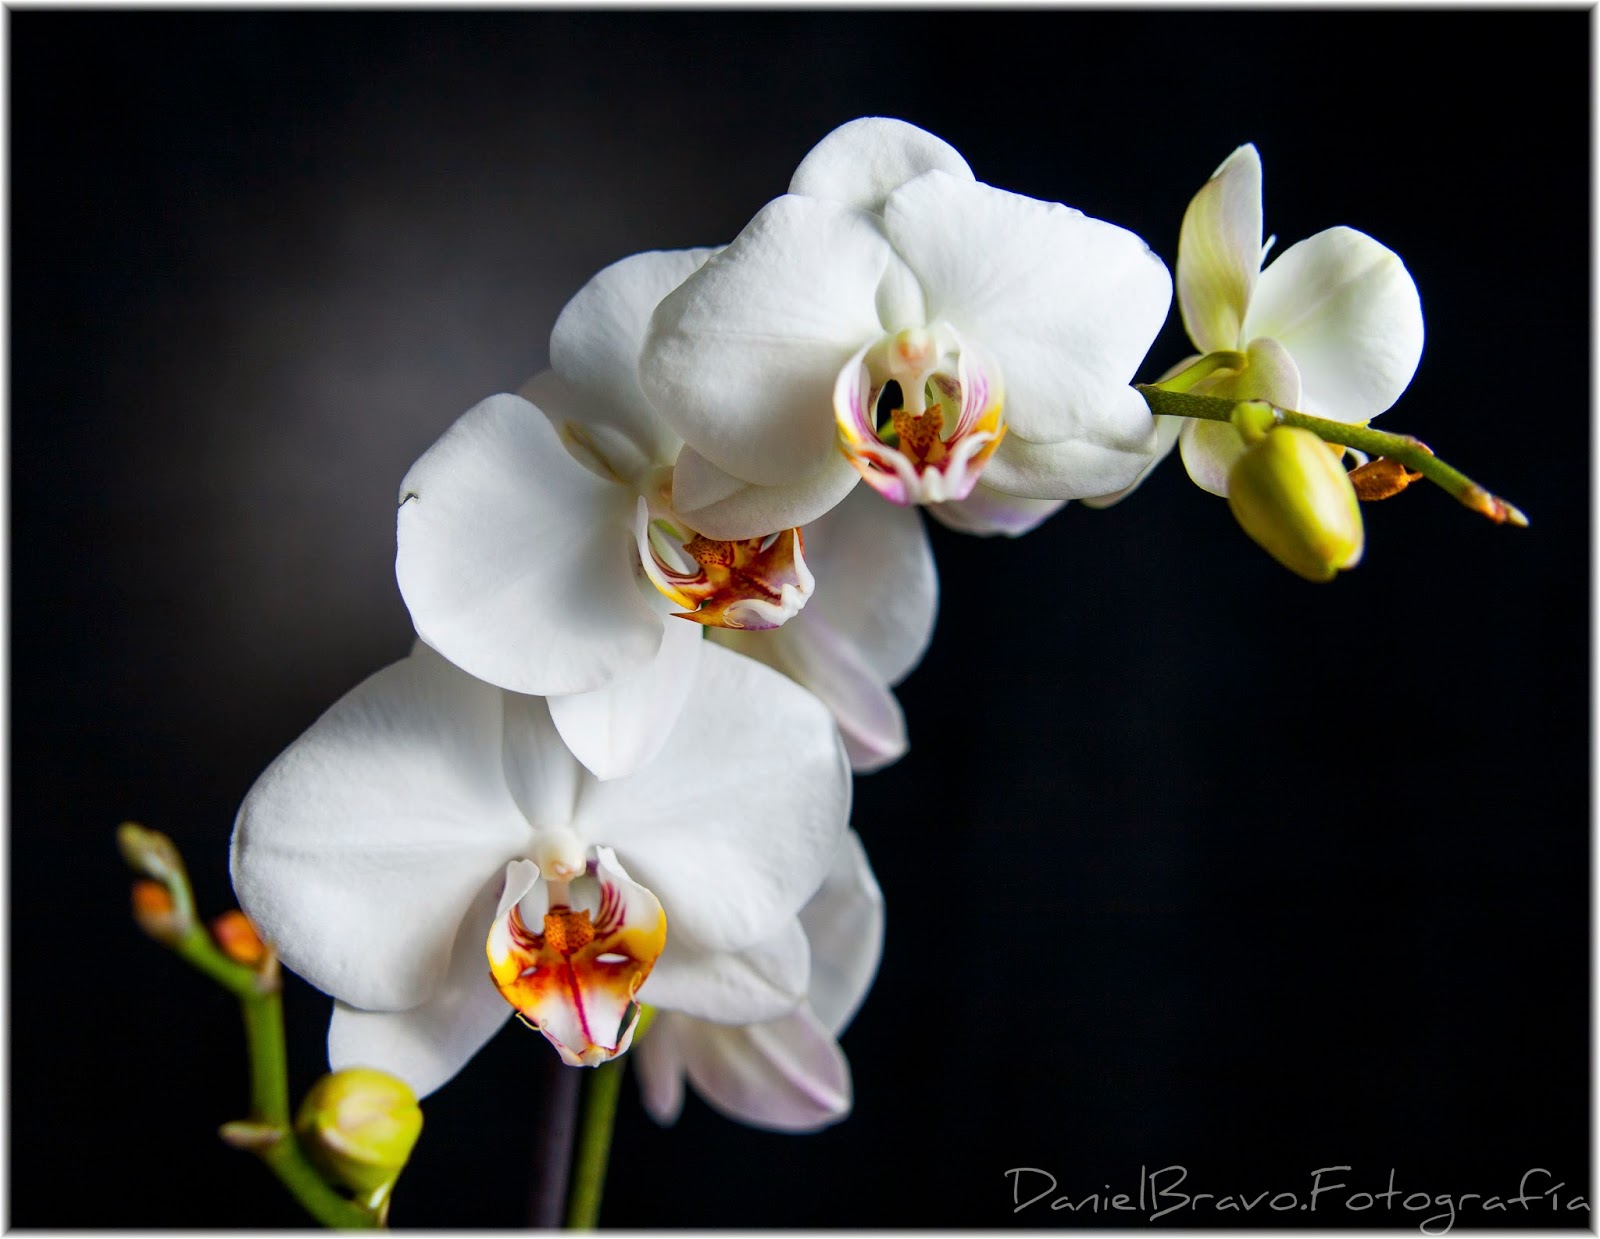 Orquídea blanca, planta de orquídea blanca, rama con orquídeas blancas en fondo negro